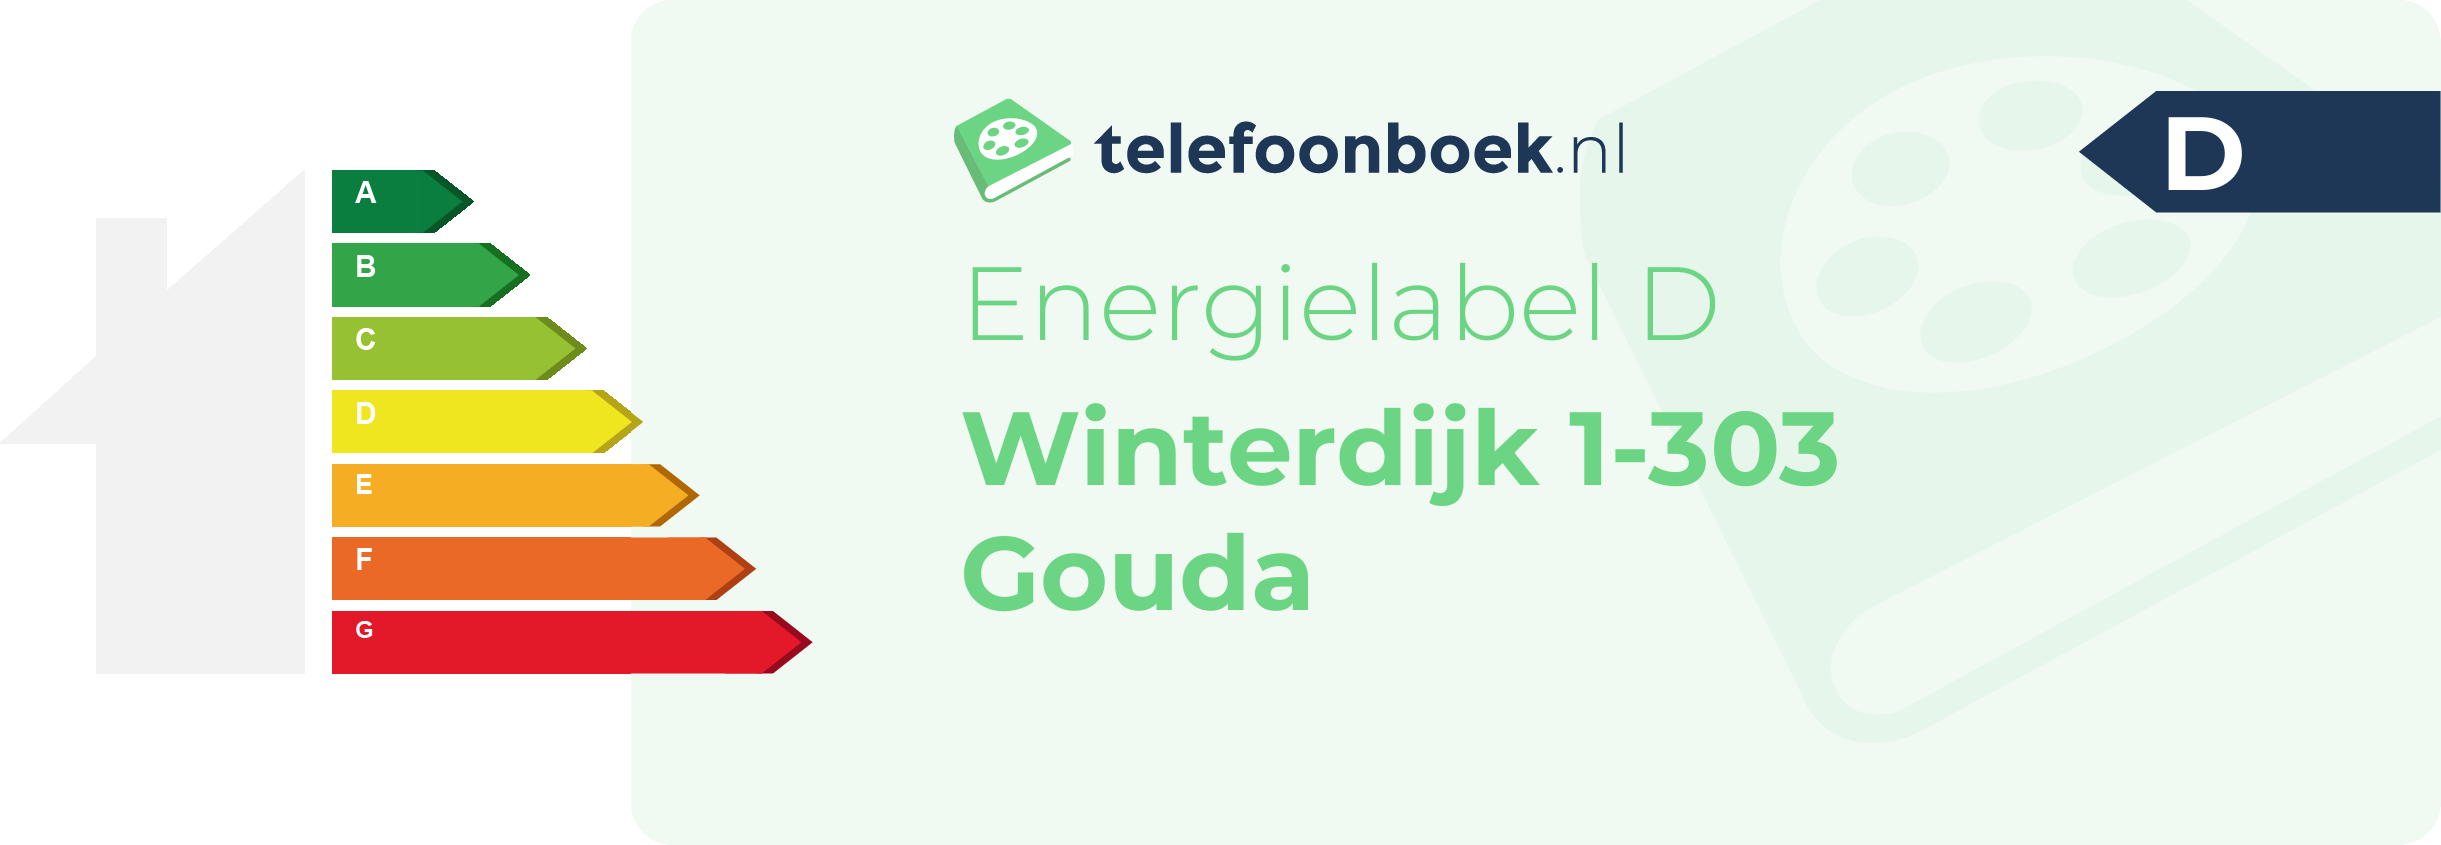 Energielabel Winterdijk 1-303 Gouda